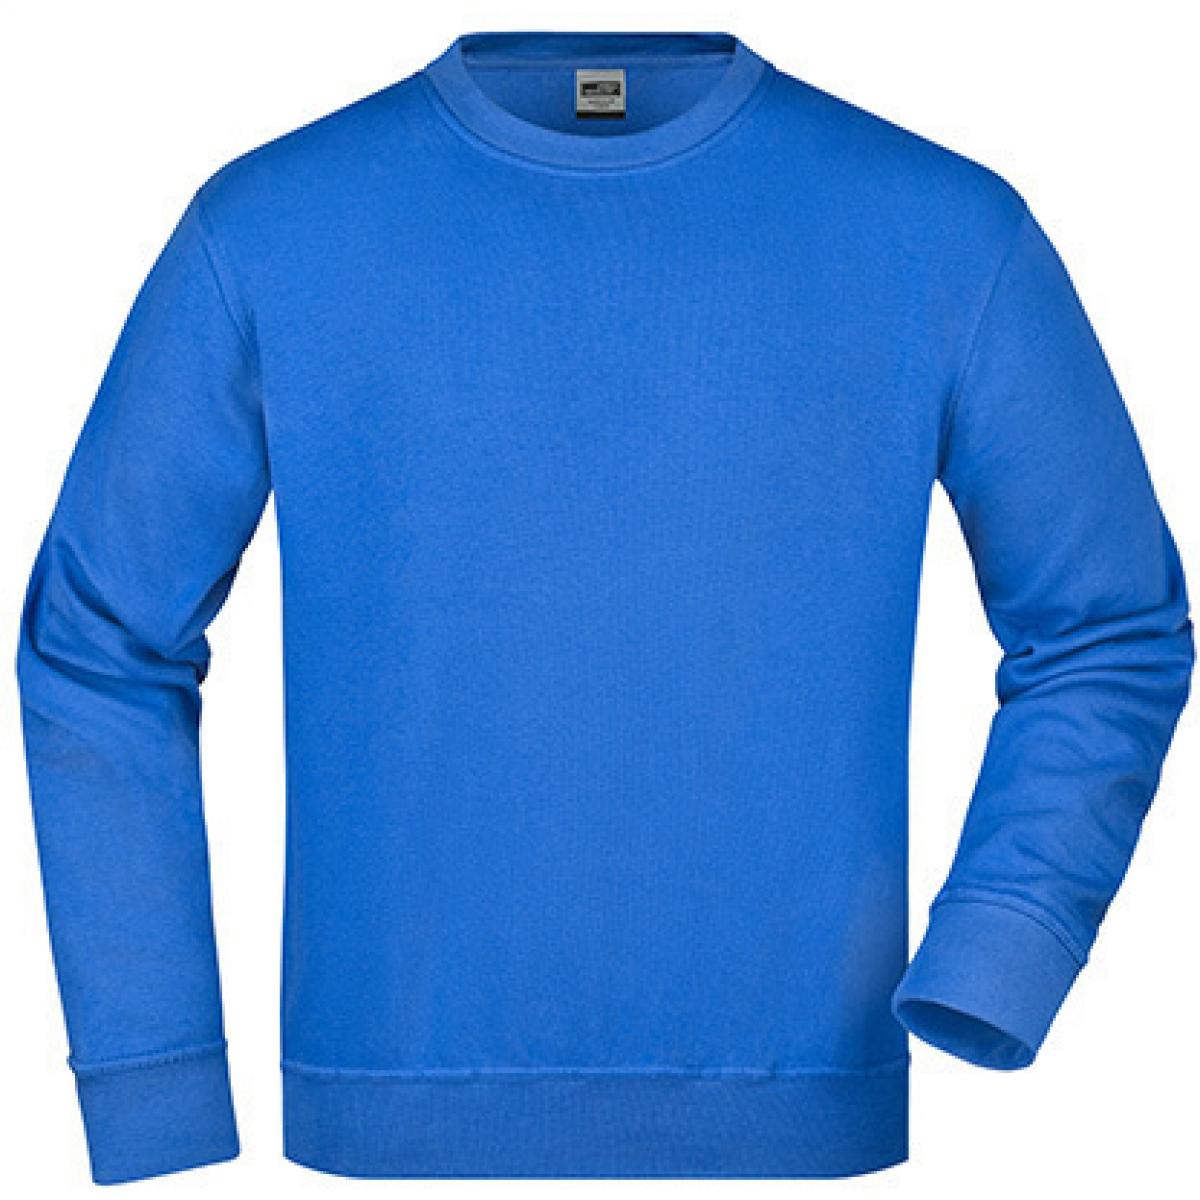 Hersteller: James+Nicholson Herstellernummer: JN840 Artikelbezeichnung: Workwear Sweatshirt / Waschbar bis 60C Farbe: Royal